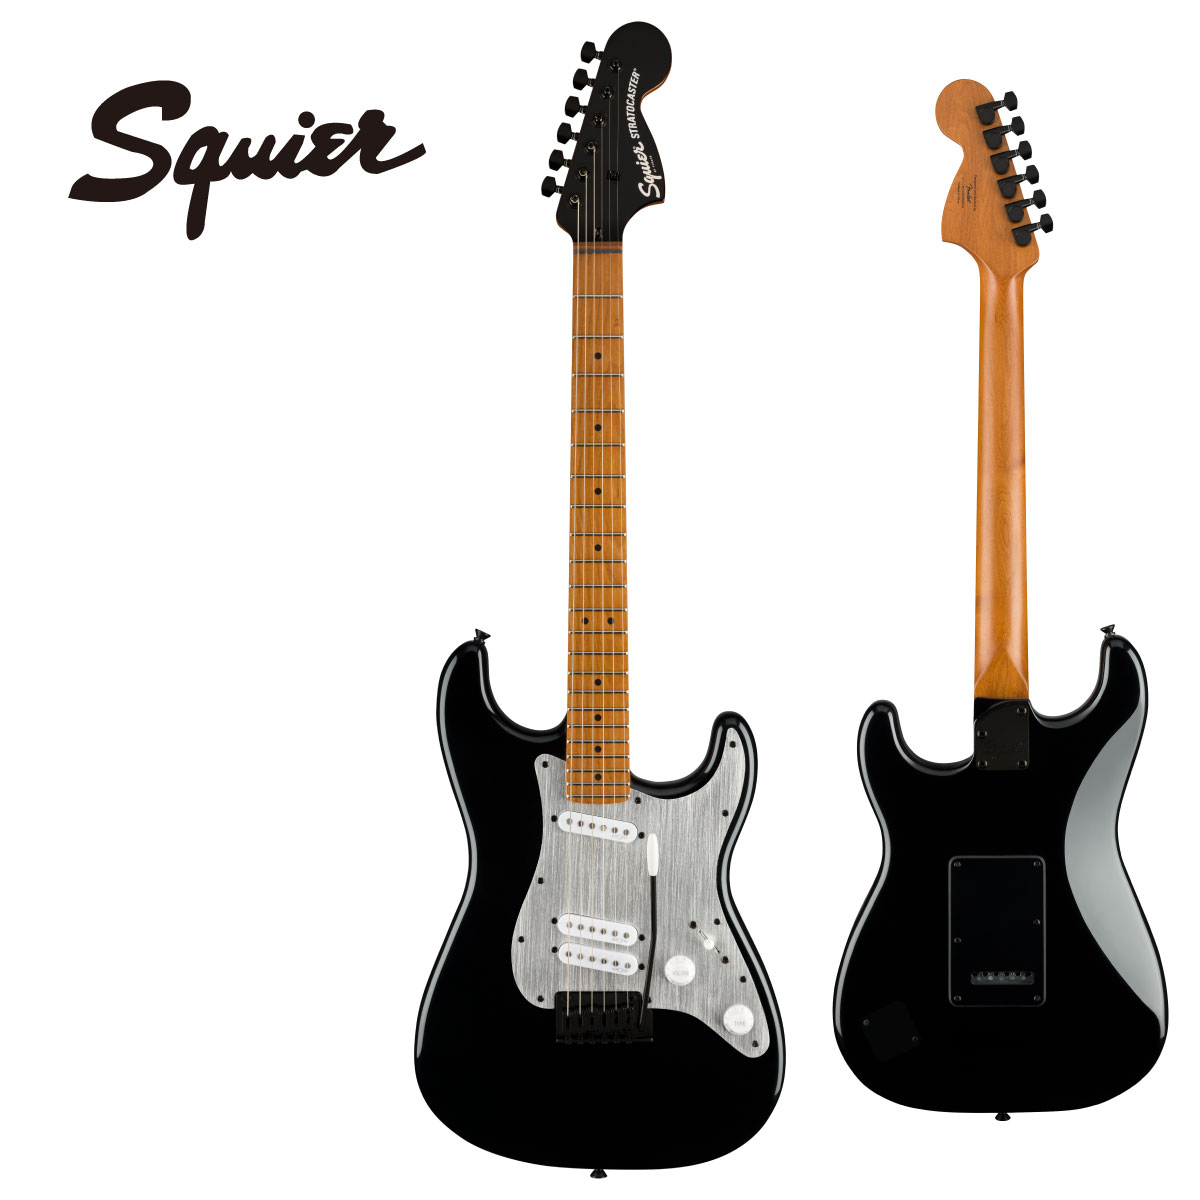 Squier Contemporary Stratocaster Specialは、こだわりの強い現代のプレーヤーを満足させるために、これまでの象徴的なフェンダーデザインには無かった、大胆な変更を加えました。 このギターの心臓部である、Squier SQR alnico single-coilピックアップは、ミドルピックアップがリアピックアップの近くに配置された特別仕様で、個性的でダイナミックなセッティングをもたらします。 最適なトーンと安定性が特徴のローステッドメープルネックと、卓越したプリアビリティを追求したスカルプテッドヒールデザインは、ハイポジショ ンへのアクセスを容易にします。 ベンディングの際に快適なフィーリングを得られる2点支持トレモロブリッジや、滑らかなチューニングと弦交換が簡単なスプリットシャフト付シー ルドギアのチューニングマシンなど、スペック表だけでは分からない高性能なコンポーネントを備えています。 また、ステルスブラックのハードウェアと、プレミアムな外観のクロムロゴを配した洗練されたマッチングヘッドは唯一無二のルックスを演出します。 Spec Series: Contemporary Body Material: Poplar Body Finish: Gloss Polyurethane Neck: Roasted Maple, “C” Shape Neck Finish: Satin Urethane with Gloss Urethane Headstock Face Fingerboard: Roasted Maple, 12” (305 mm) Frets: 22, Jumbo Position Inlays: (), Black Dot (Roasted Maple) Nut (Material/Width): Graphite, 1.650” (42 mm) Tuning Machines: Sealed Die-Cast with Split Shafts Scale Length: 25.5” (648 mm) Bridge: 2-Point Synchronized Tremolo with Block Saddles Pickguard: (504, 541), 1-Ply Anodized Aluminum (506), 3-Ply Black (536) Pickups: Squier&#174; SQR&#8482; Alnico Single-Coil (Bridge), Squier&#174; SQR&#8482; Alnico Single-Coil (Middle), Squier&#174; SQR&#8482; Alnico Single-Coil (Neck) Pickup Switching: 5-Position Blade, Special Switching: Position 1. Bridge and Middle (Series, Hum-Cancelling), 2. Middle, 3. Middle and Neck (Parallel), 4. Bridge, Middle and Neck, 5. Neck Controls: Master Volume, Master Tone Control Knobs: White Plastic Hardware Finish: Black Strings: Nickel Plated Steel (.009-.042 Gauges) Case/Gig Bag: None 付属品：純正ソフトケース、正規保証書 お問い合わせフリーダイヤル:0120-37-9630